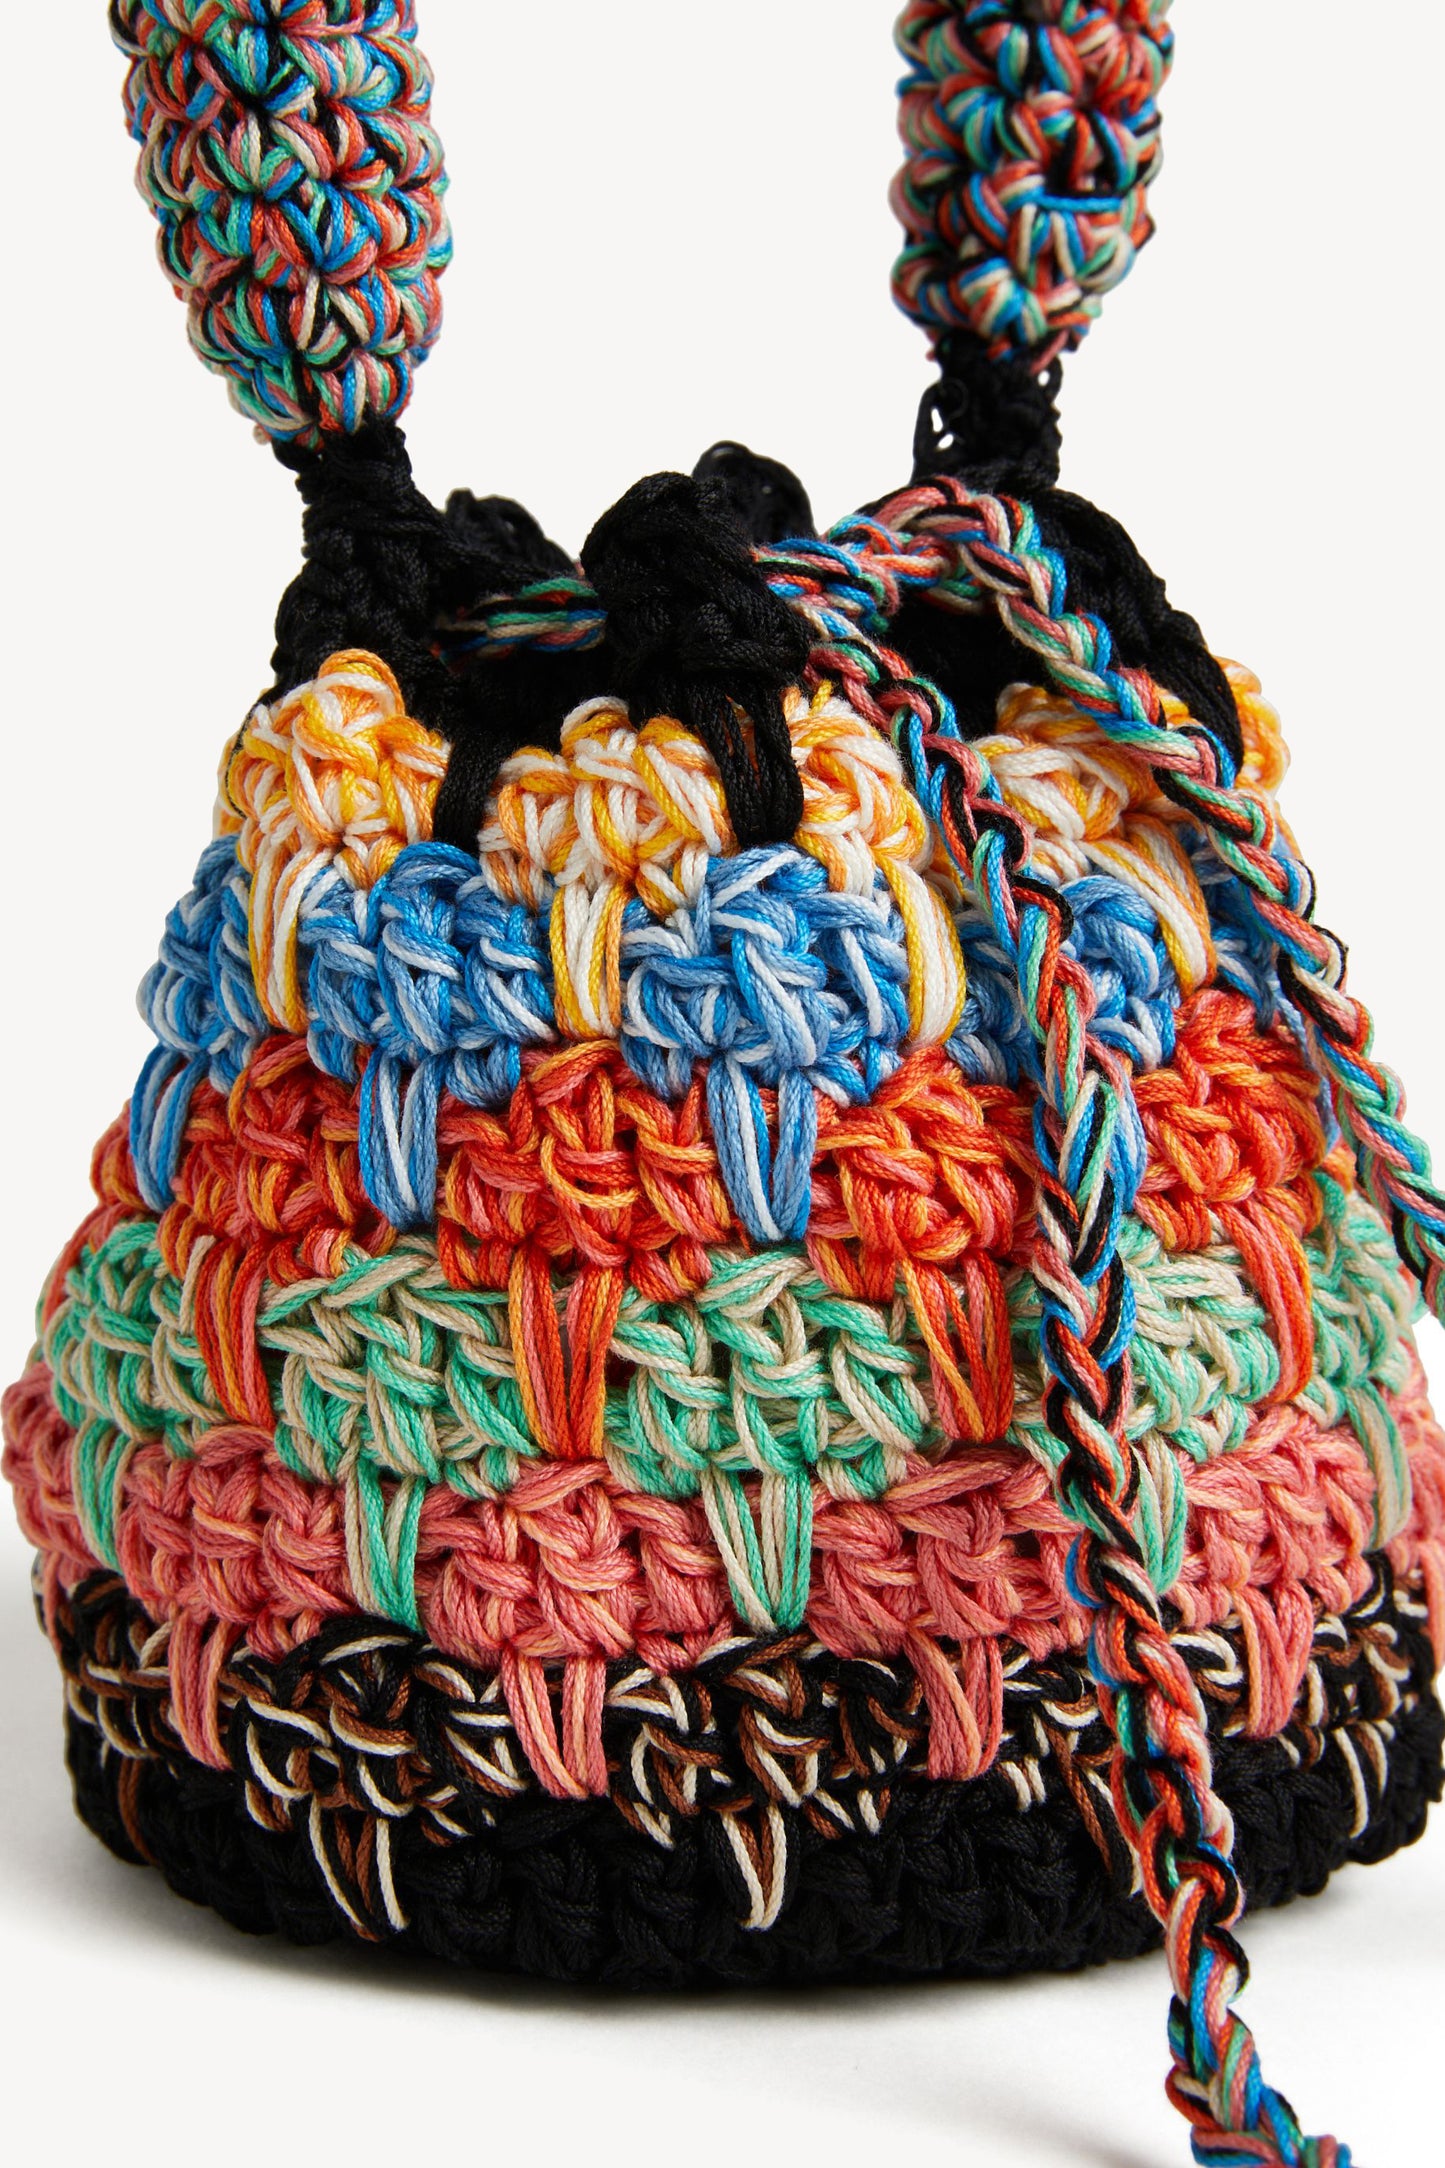 Tasche Crochet Mini in MulticolorAlanui - Anita Hass